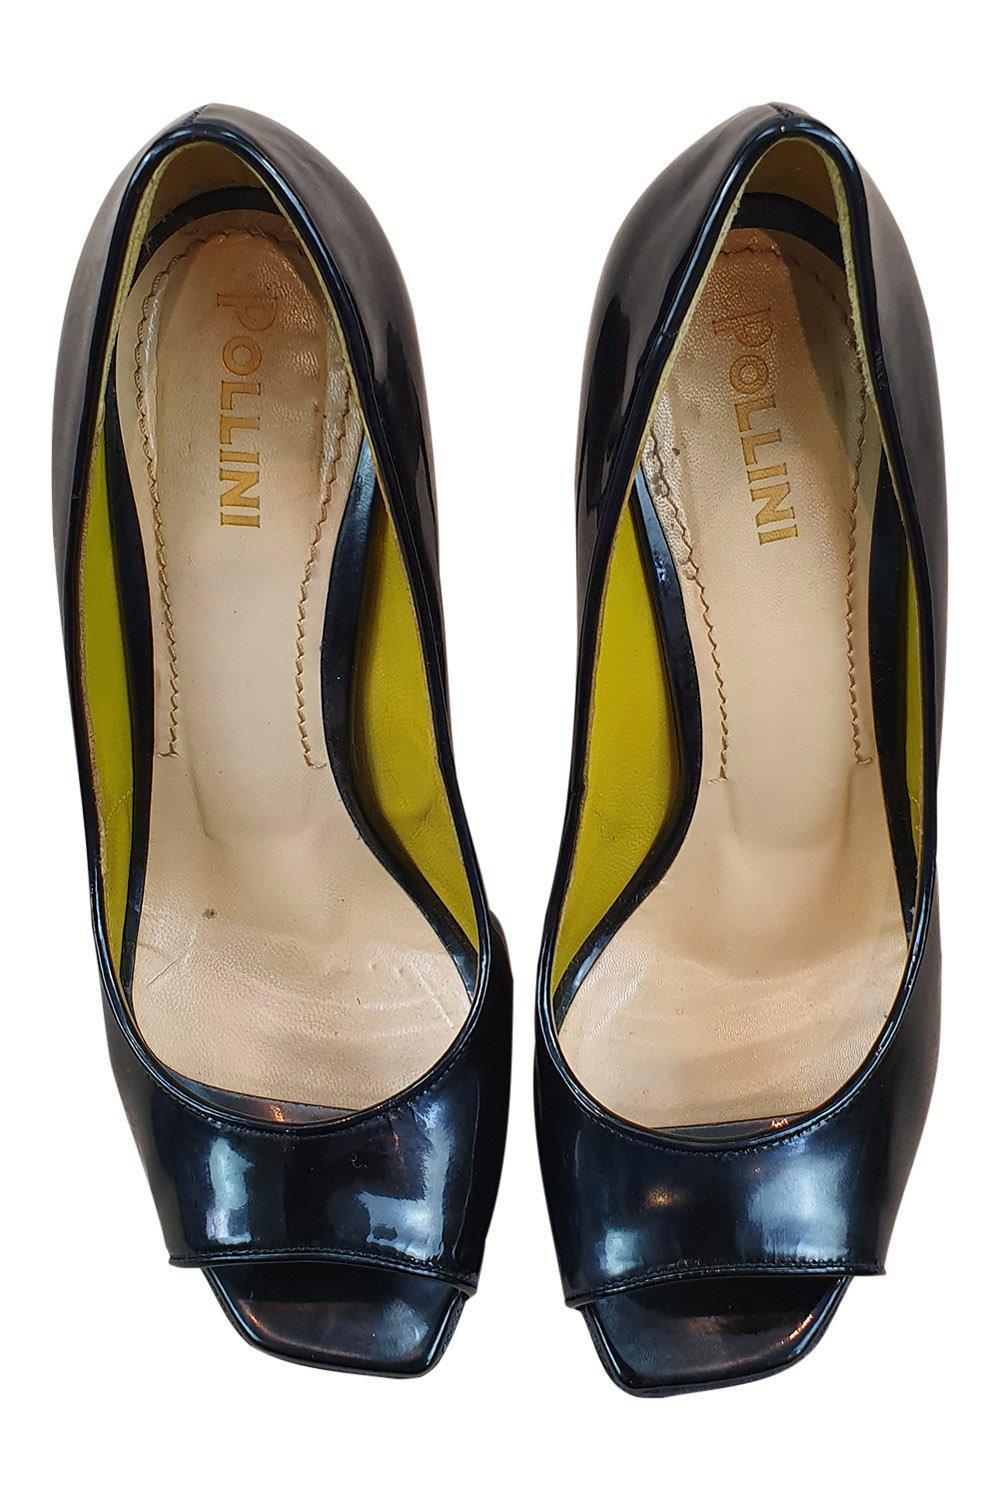 POLLINI Black Patent Leather Peep Toe Platform Heel (39)-Pollini-The Freperie